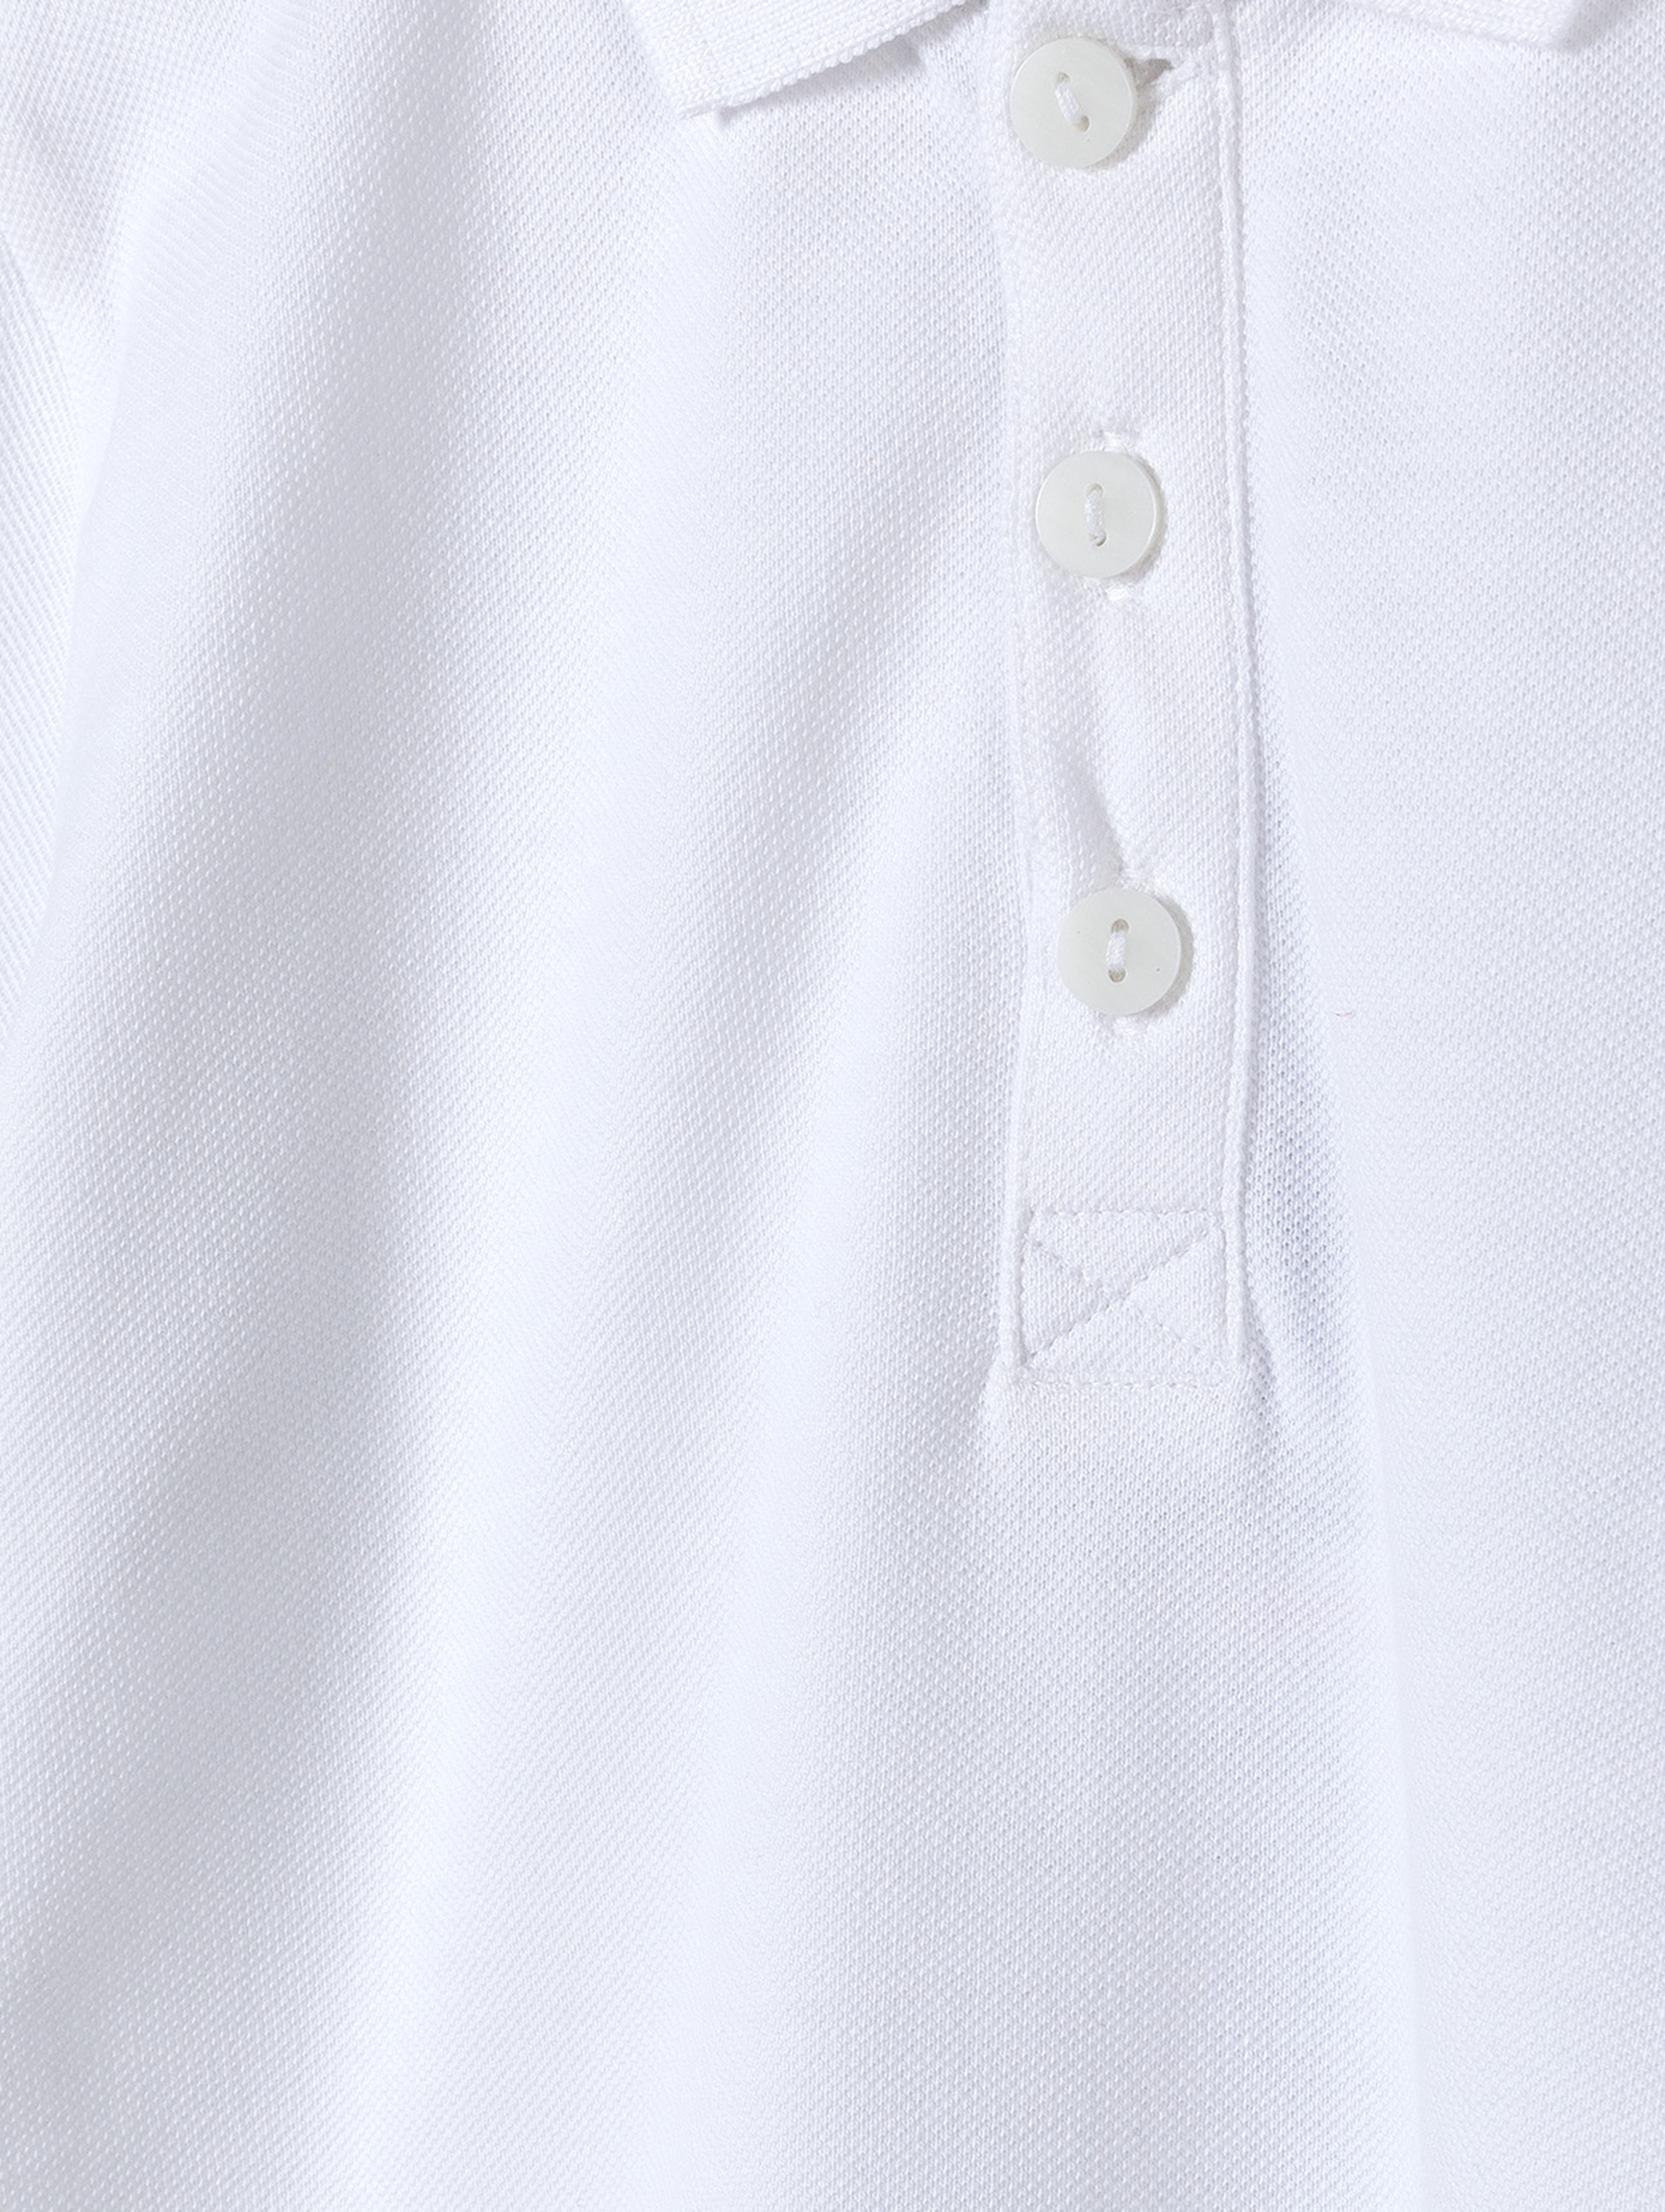 Biała koszulka polo dla chłopca z bawełny